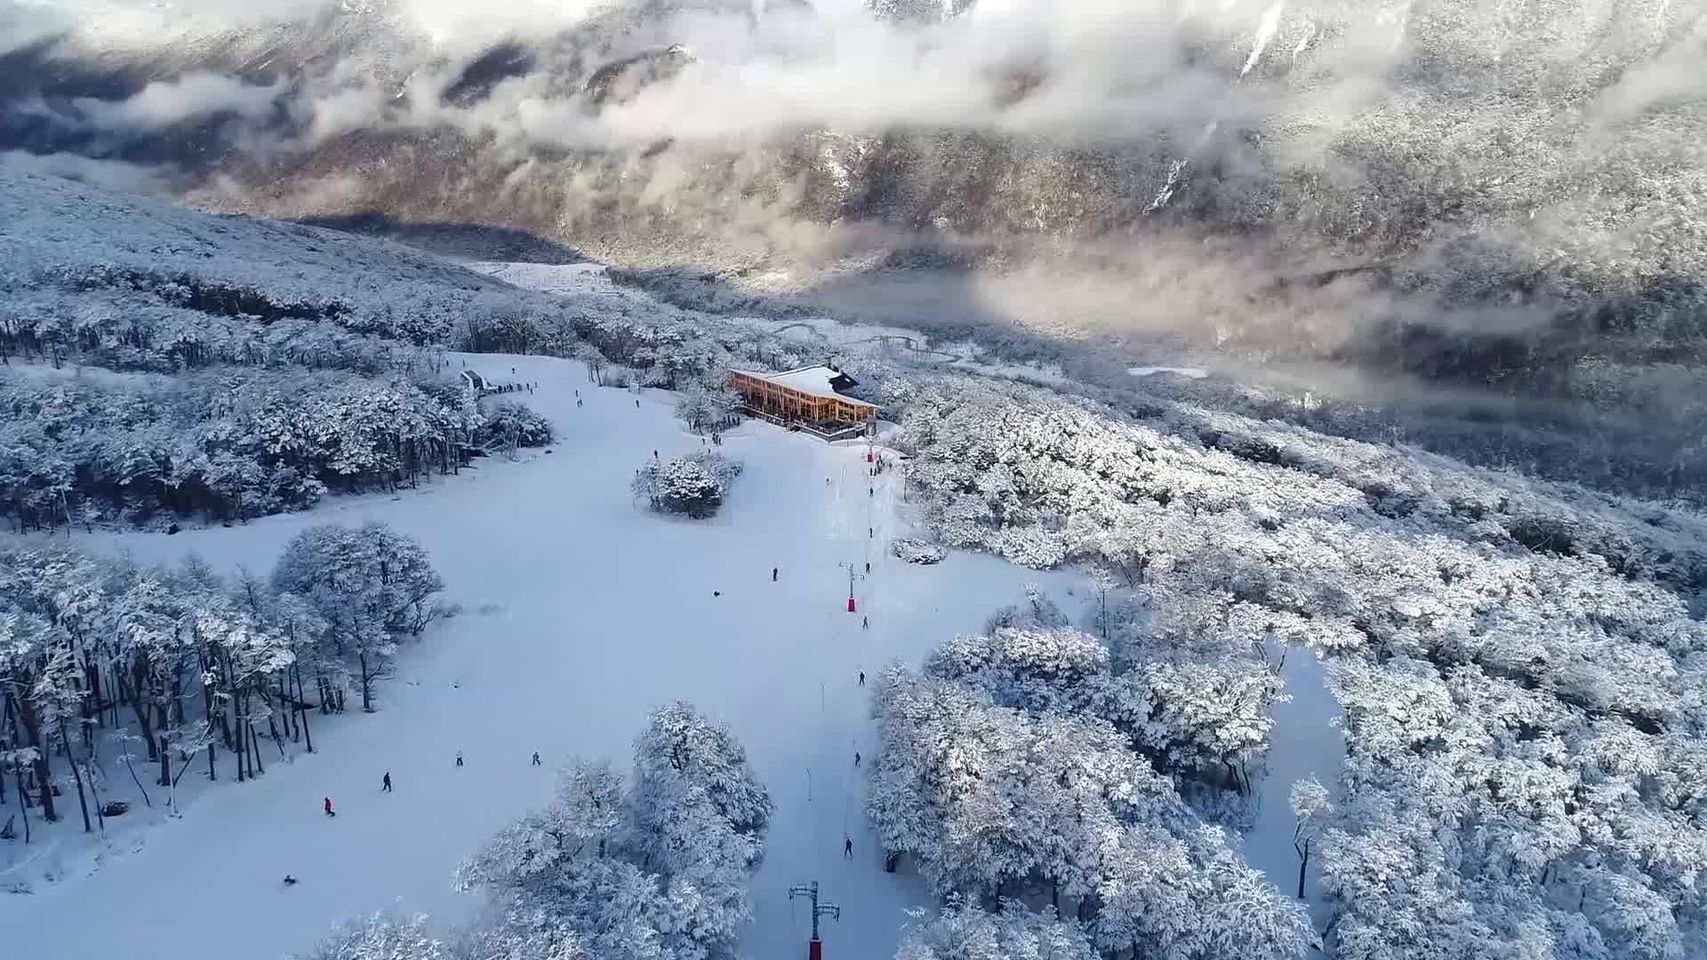 Está ubicado a tan solo 26 km de Ushuaia, y ofrece las mejores condiciones para disfrutar múltiples opciones de deportes de invierno. Fotos Cerro Castor.